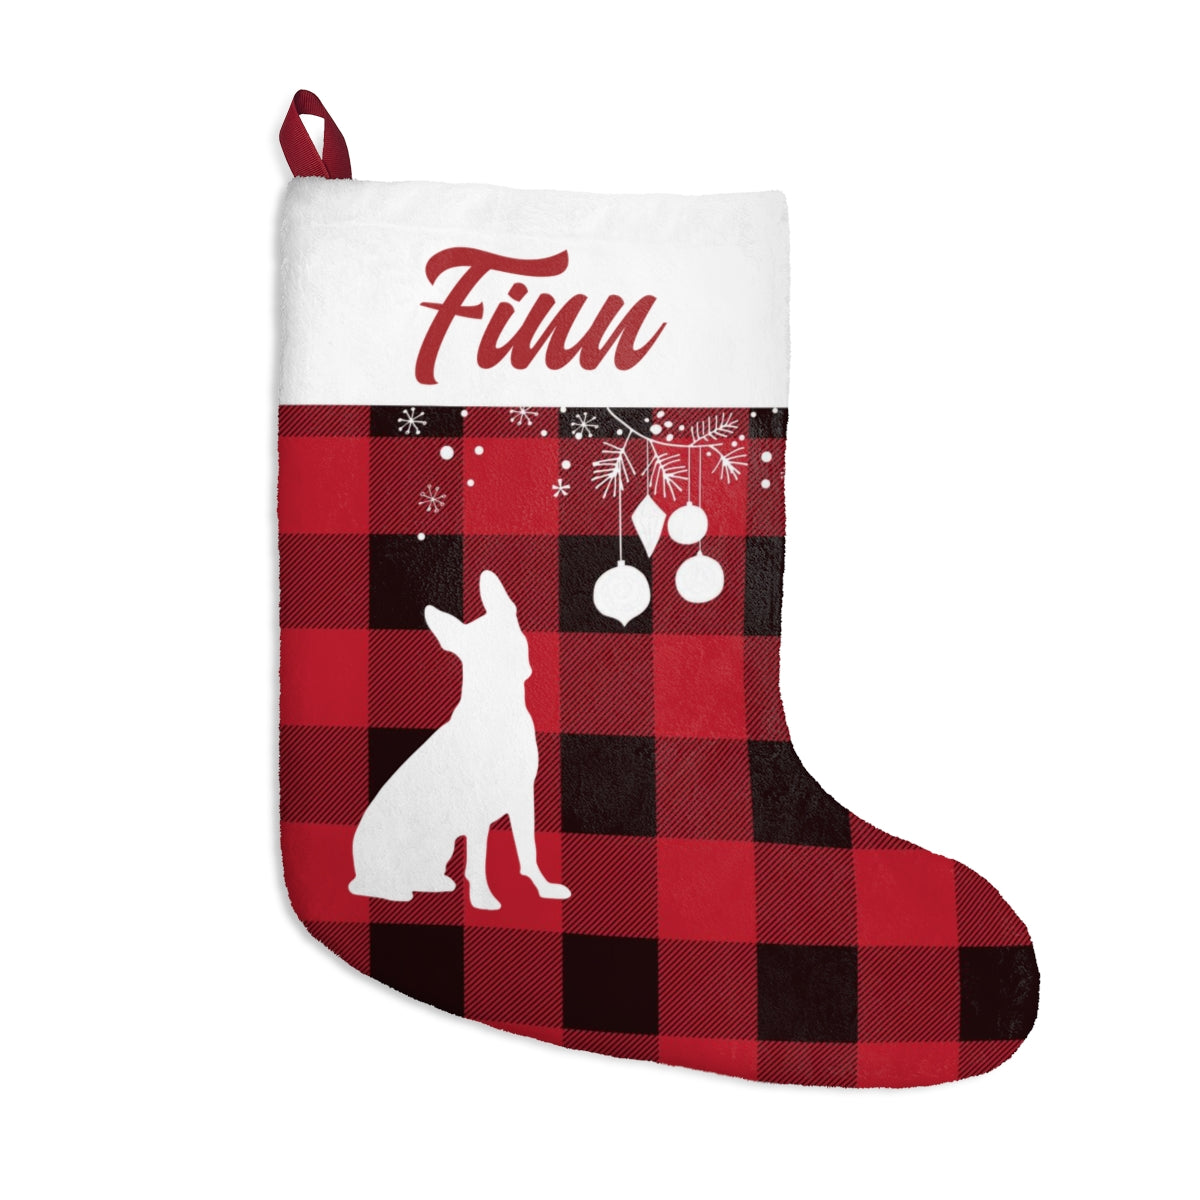 Finn Christmas Stockings